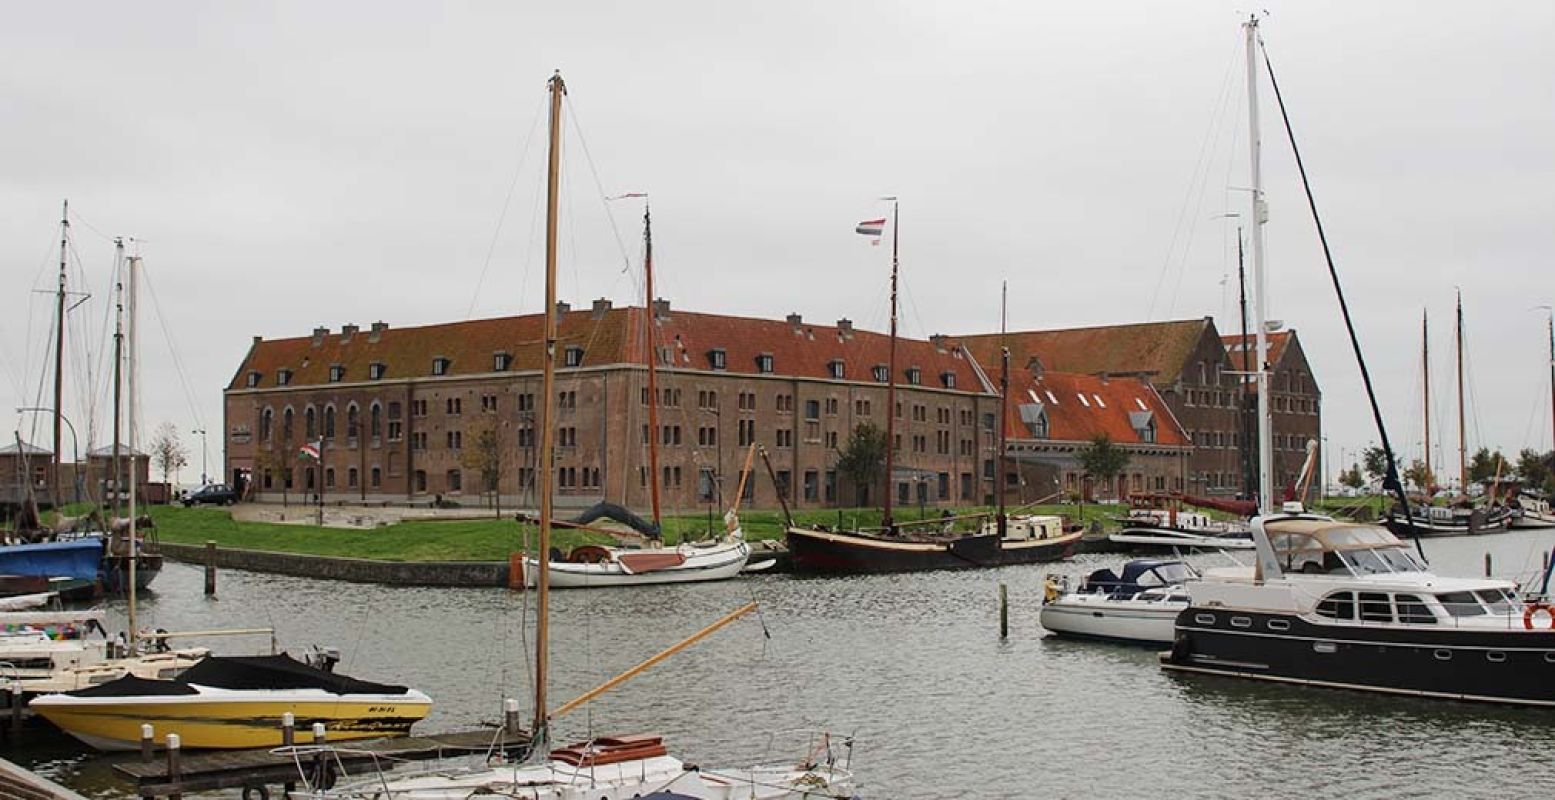 Bijzondere locatie: het museum ligt aan de haven van Hoorn. Foto: DagjeWeg.NL.